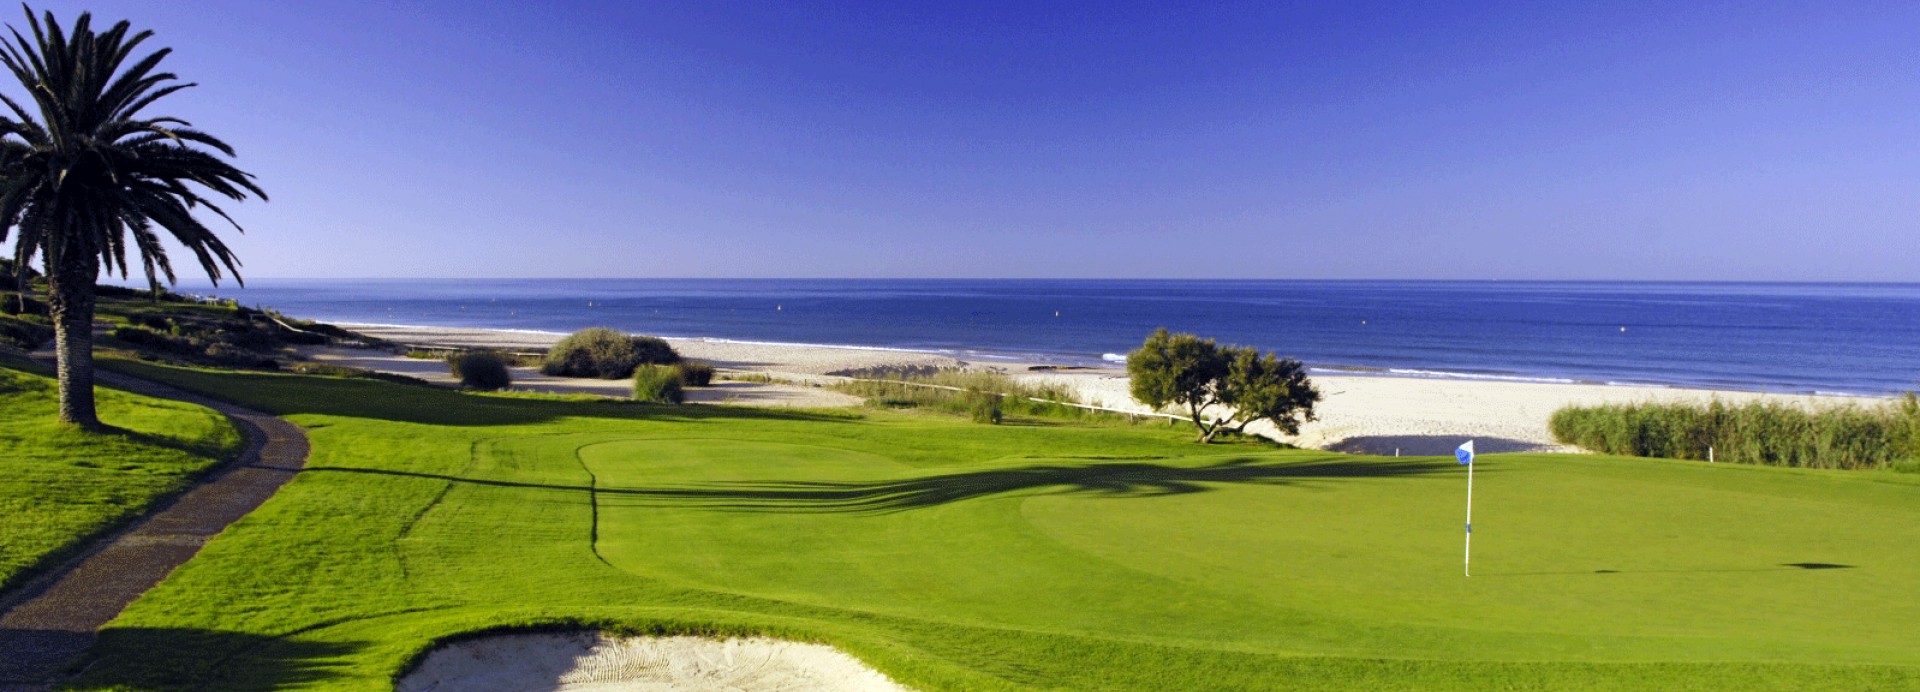 Vale do Lobo Golf Ocean Course  | Golfové zájezdy, golfová dovolená, luxusní golf